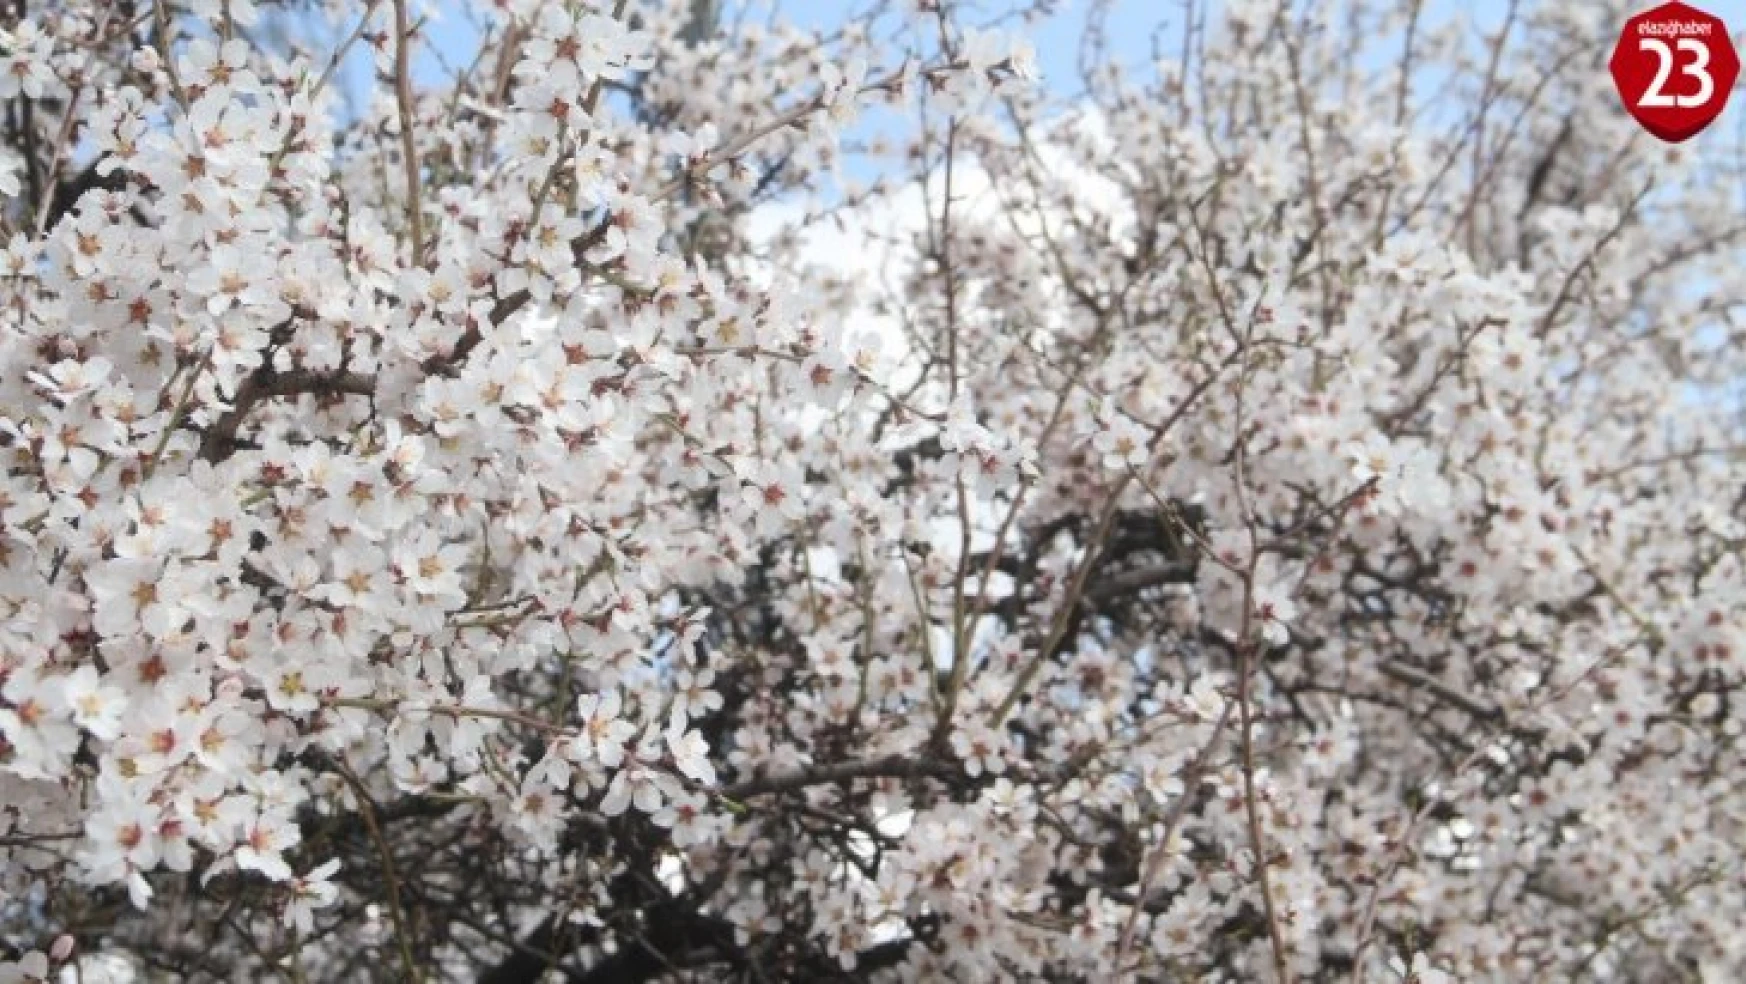 Elazığ'da bahar havası, ağaçlar çiçek açtı